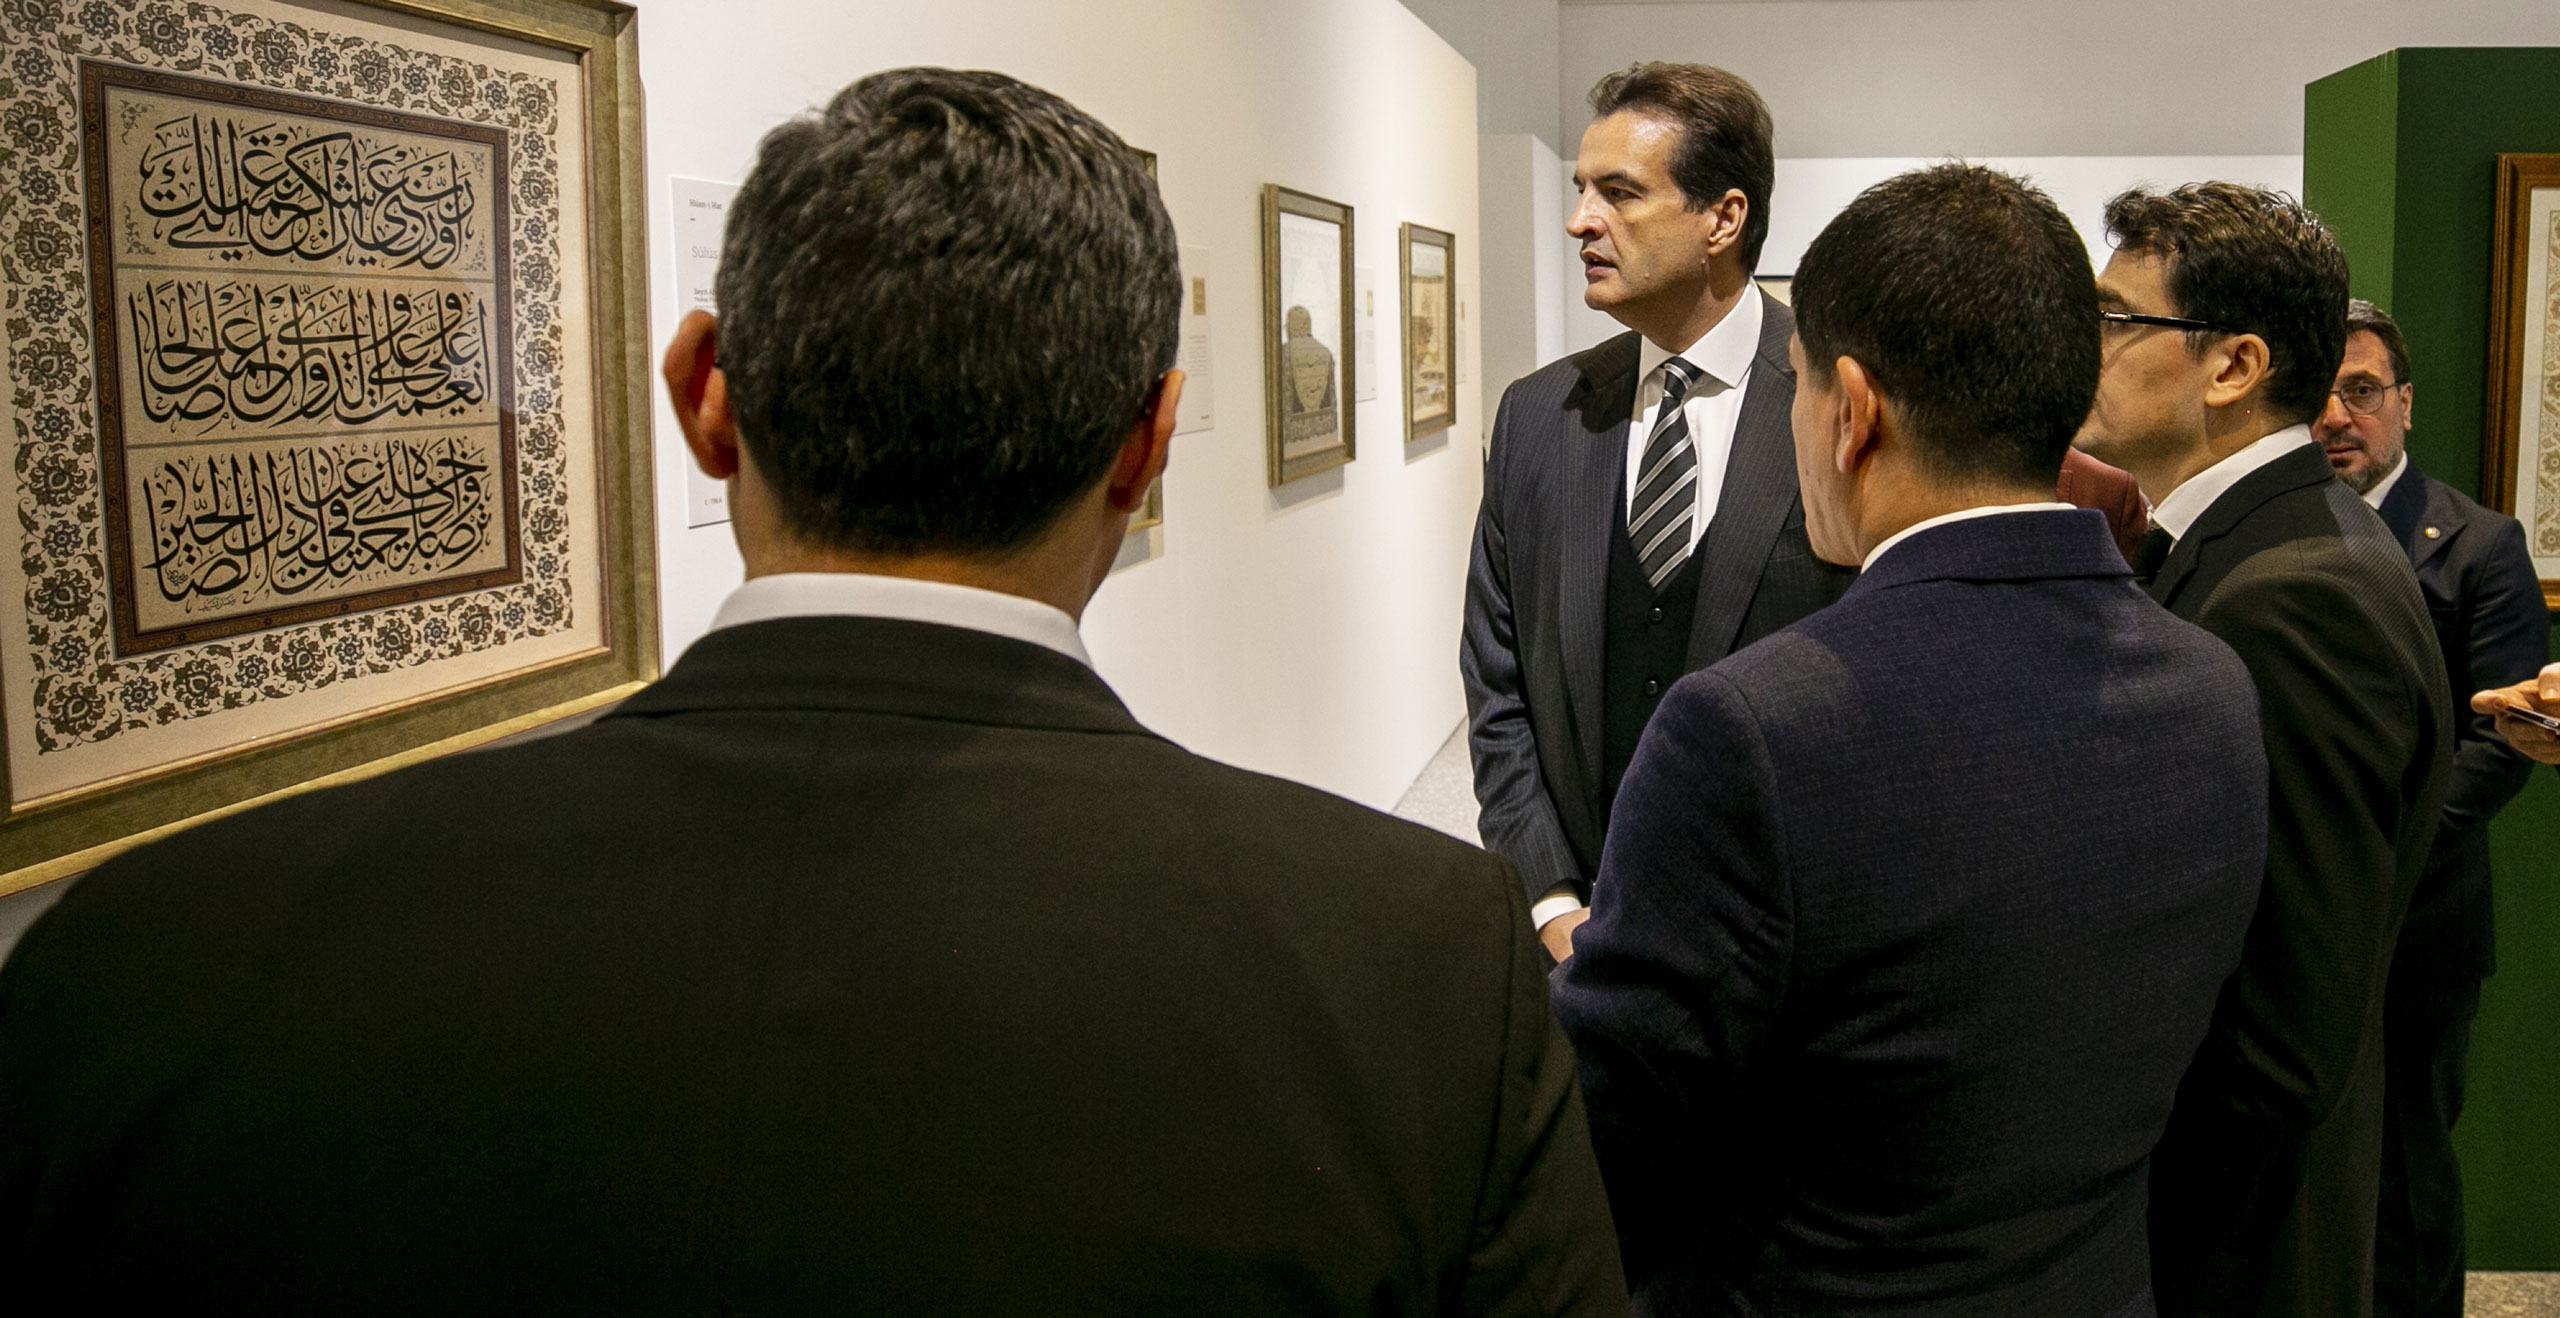 تيكا ومؤسسة البيرق تنظم معرضا للوحات التركية في تونس